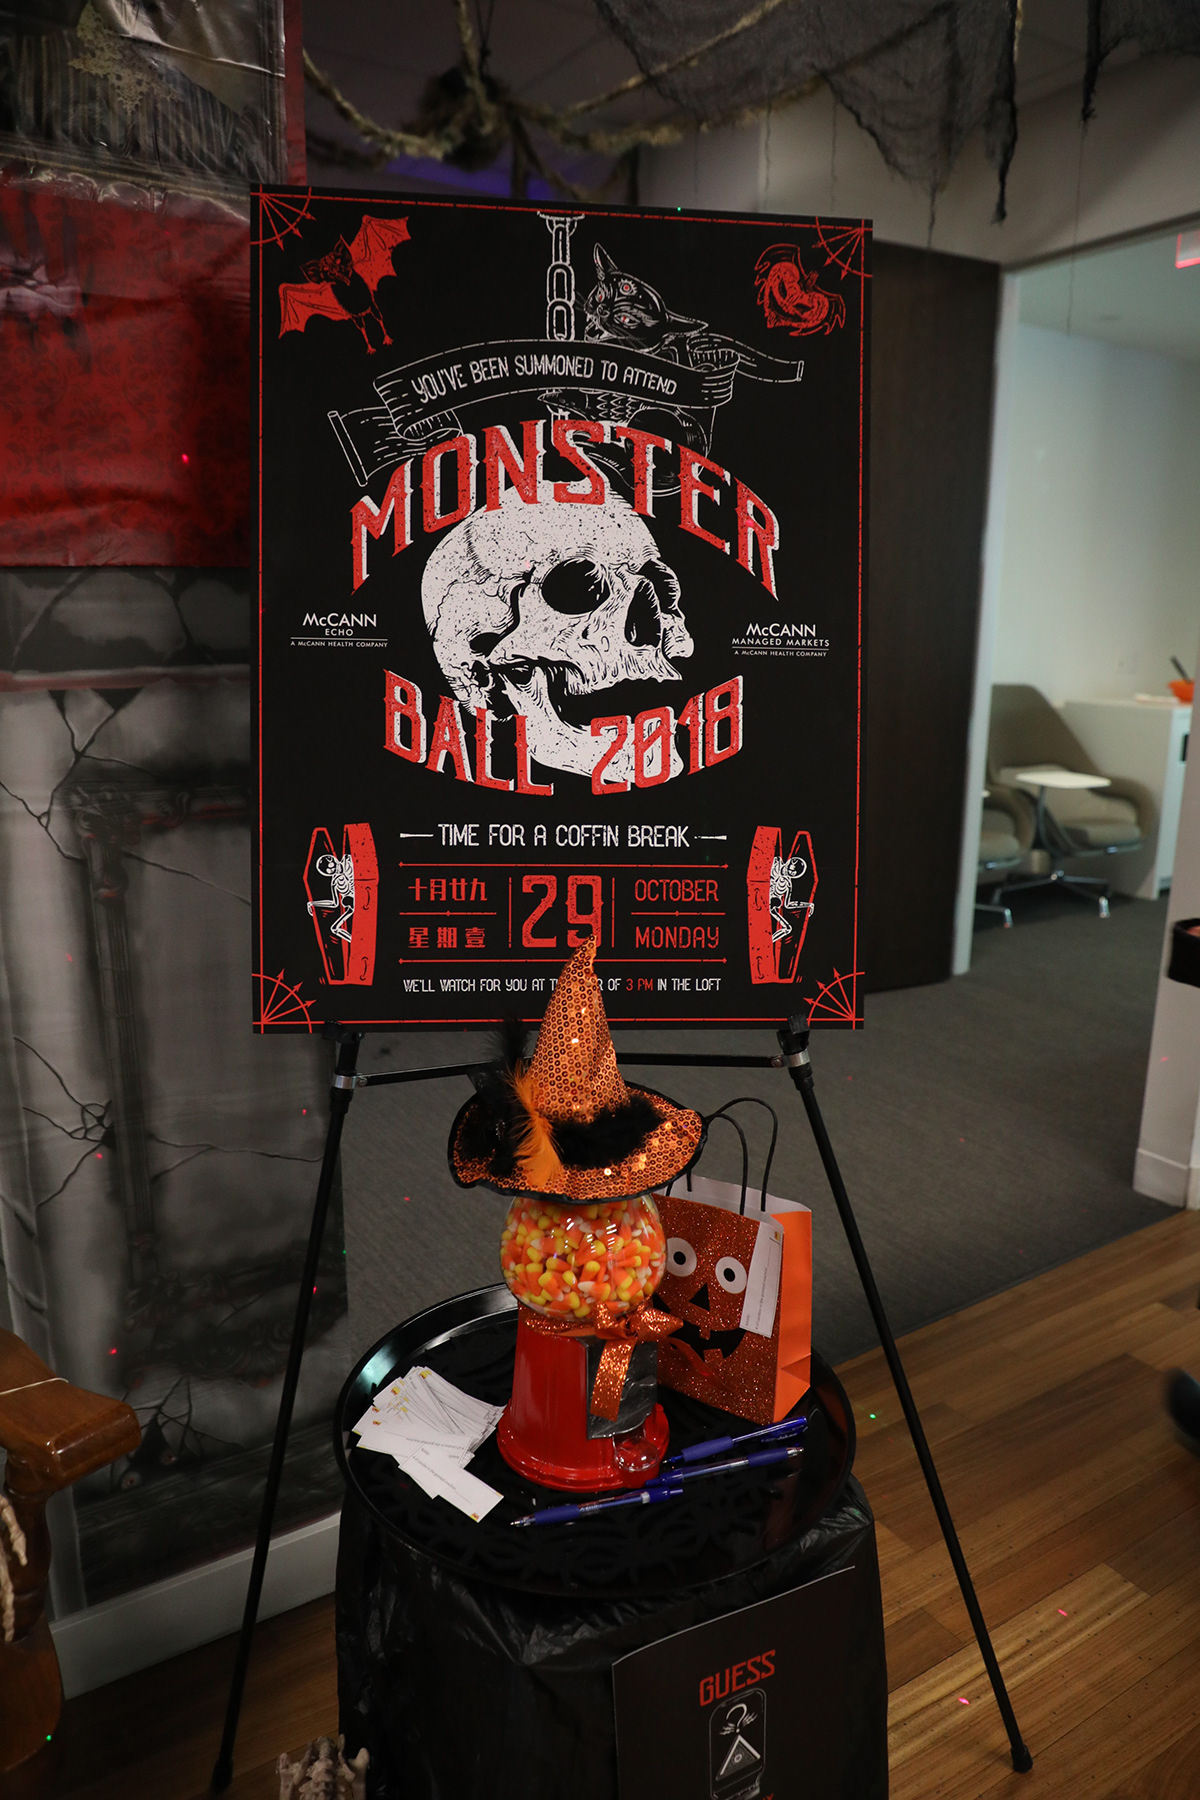 Halloween monster cult skull poster digitalart gif Eblast